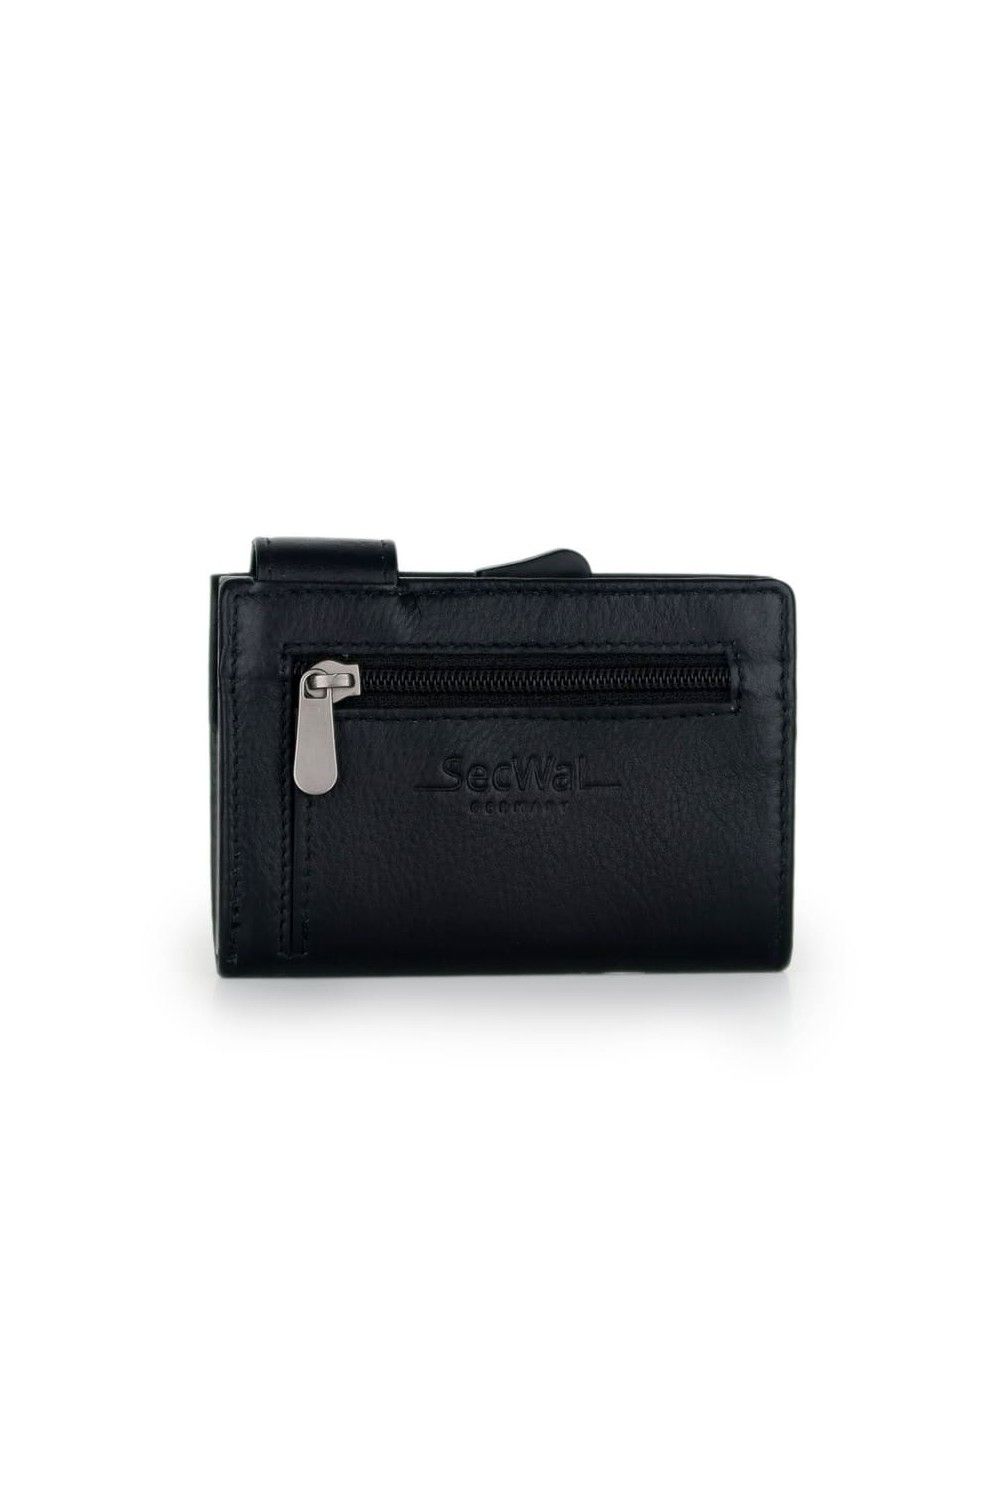 SecWal Card Case RV Leather Black